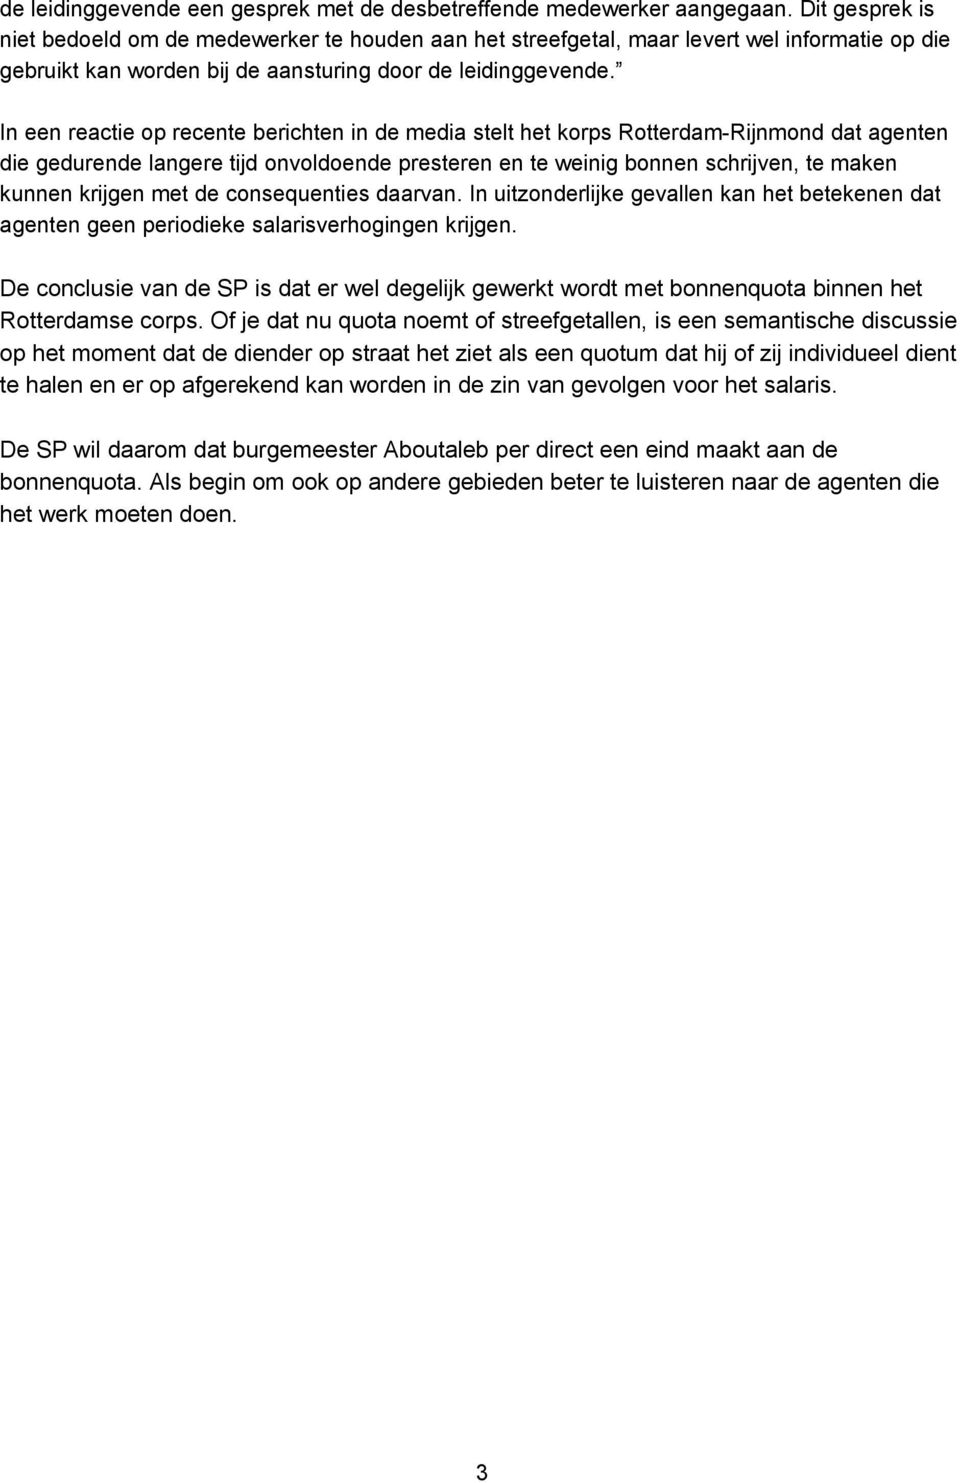 In een reactie op recente berichten in de media stelt het korps Rotterdam-Rijnmond dat agenten die gedurende langere tijd onvoldoende presteren en te weinig bonnen schrijven, te maken kunnen krijgen